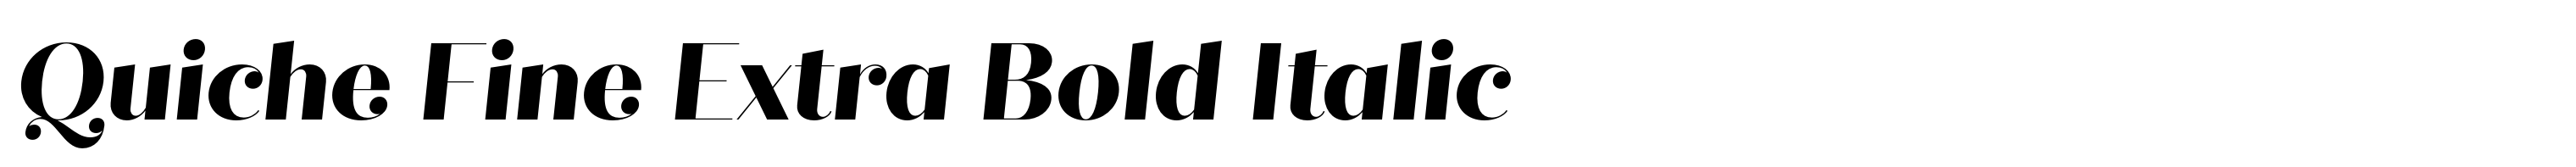 Quiche Fine Extra Bold Italic